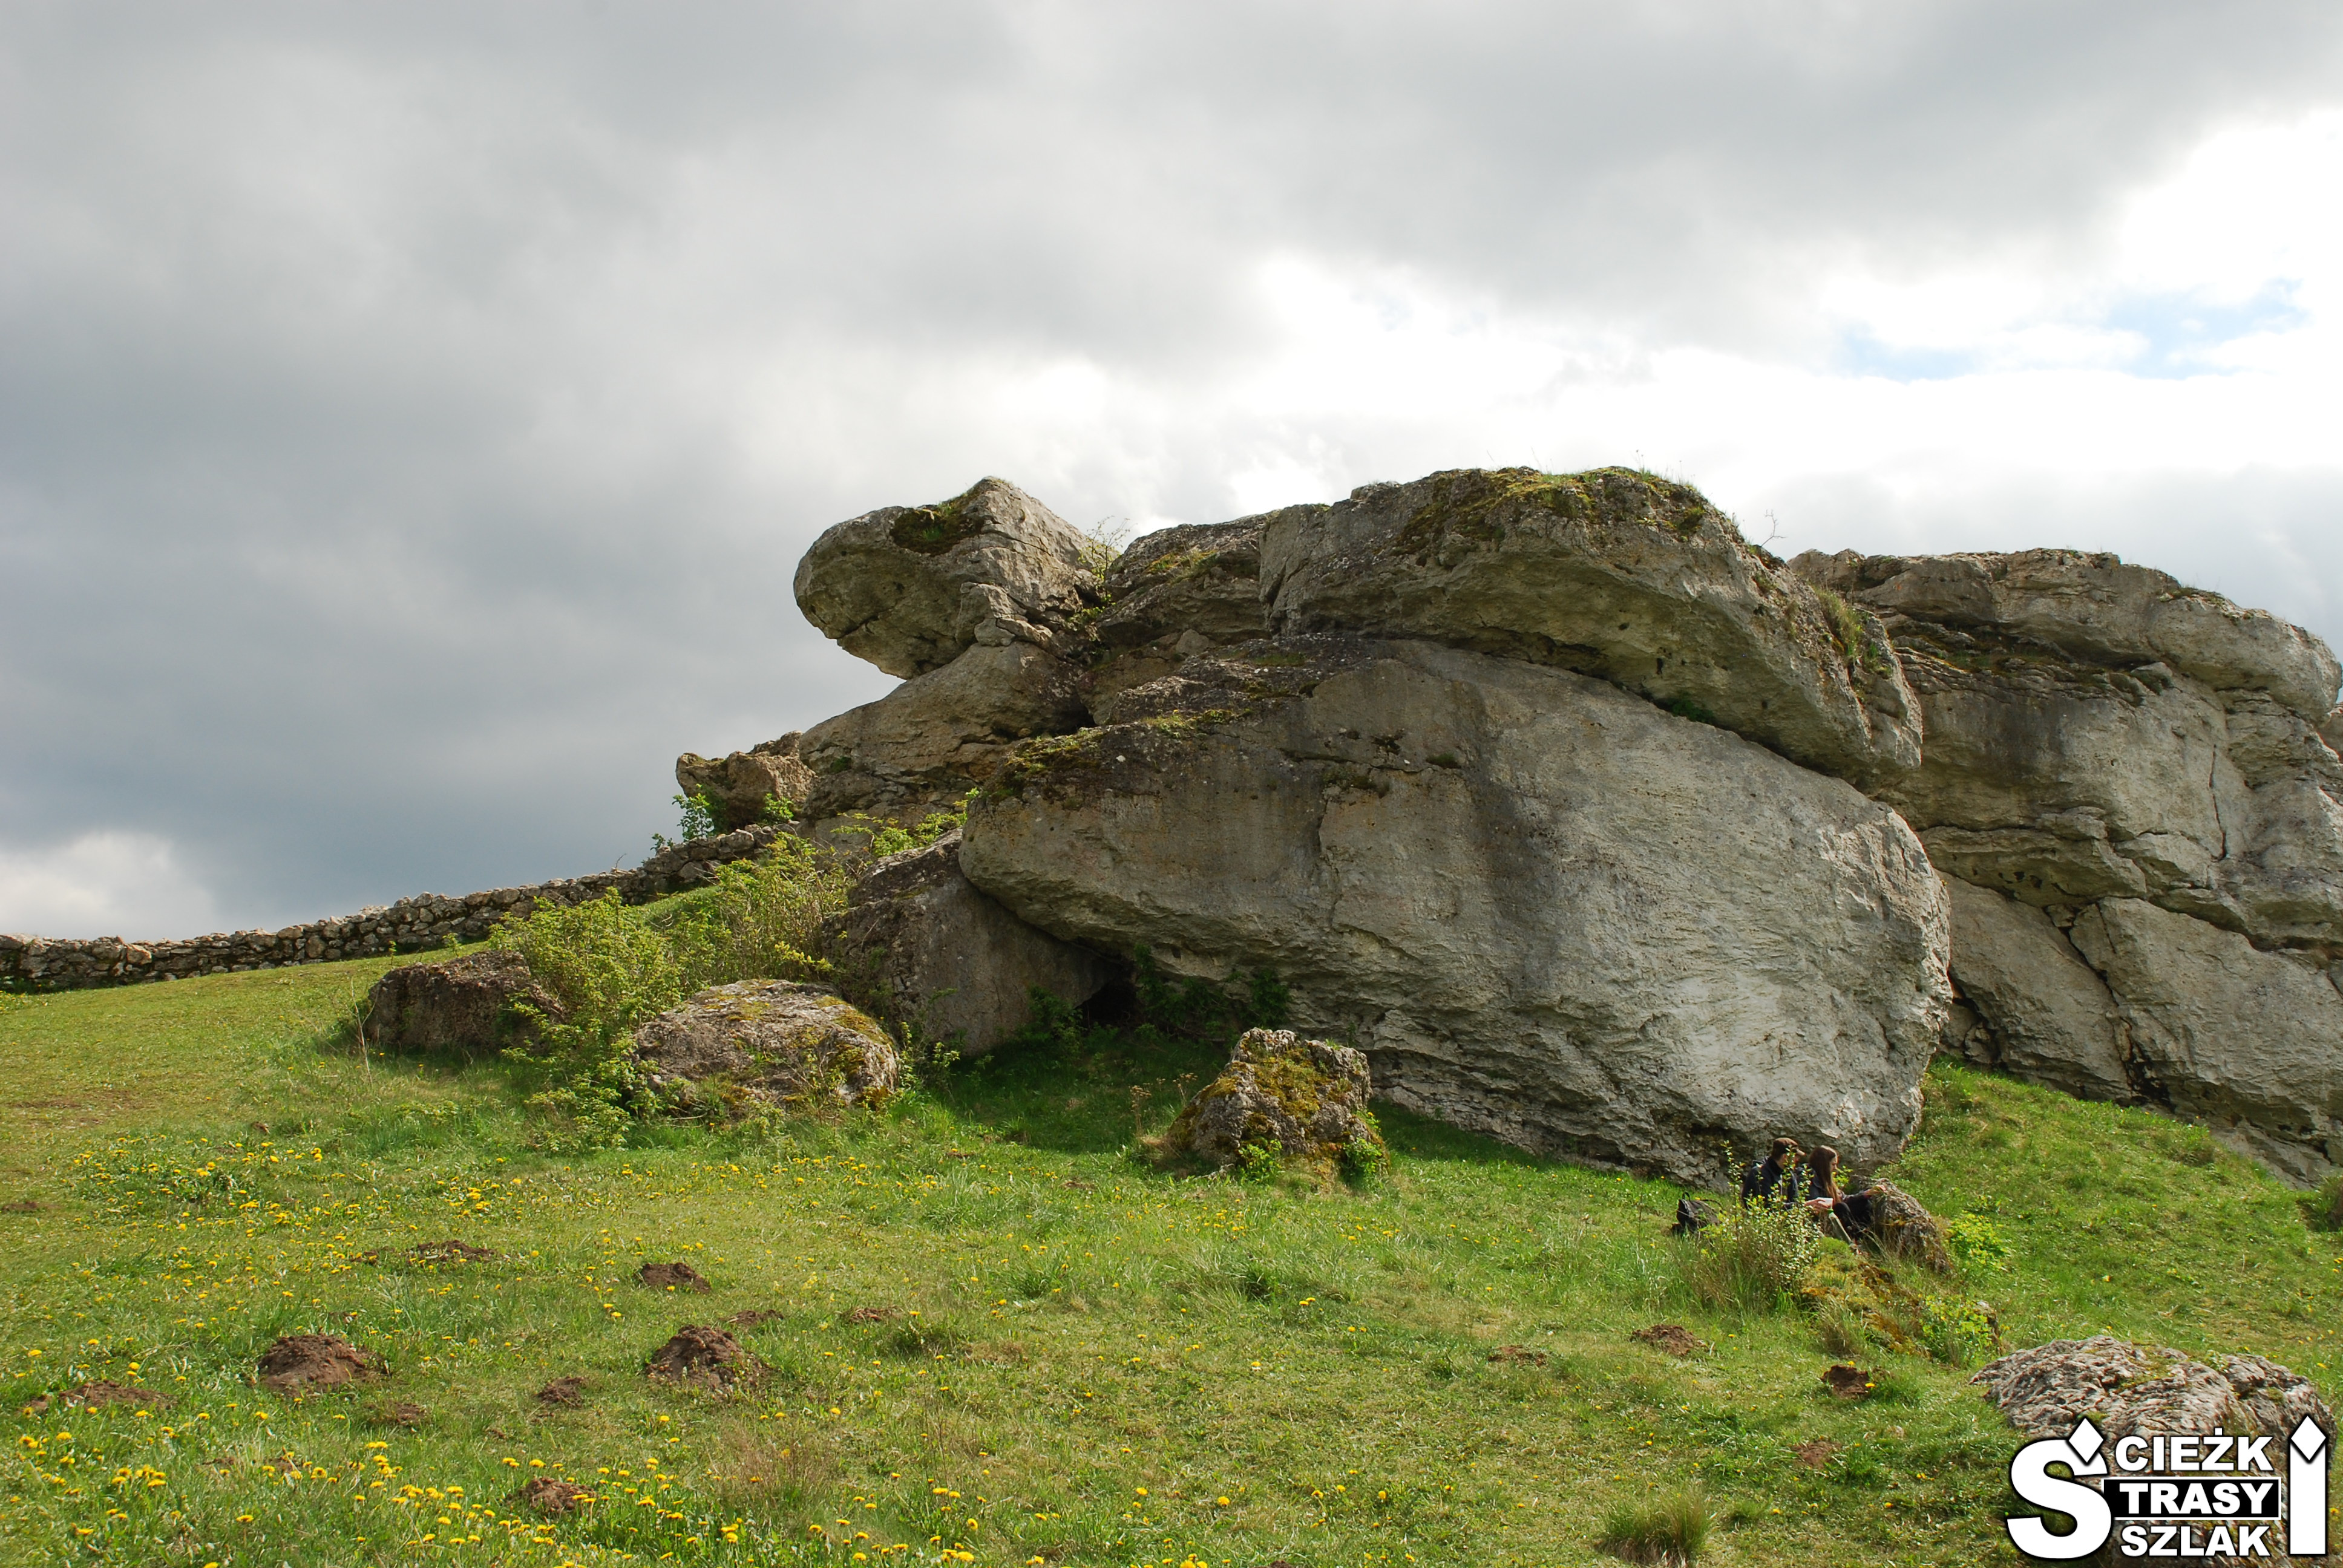 Duże skały wapienne na wzgórzu zamkowym przy ruinach zamku w Olsztynie w kształcie żółwia